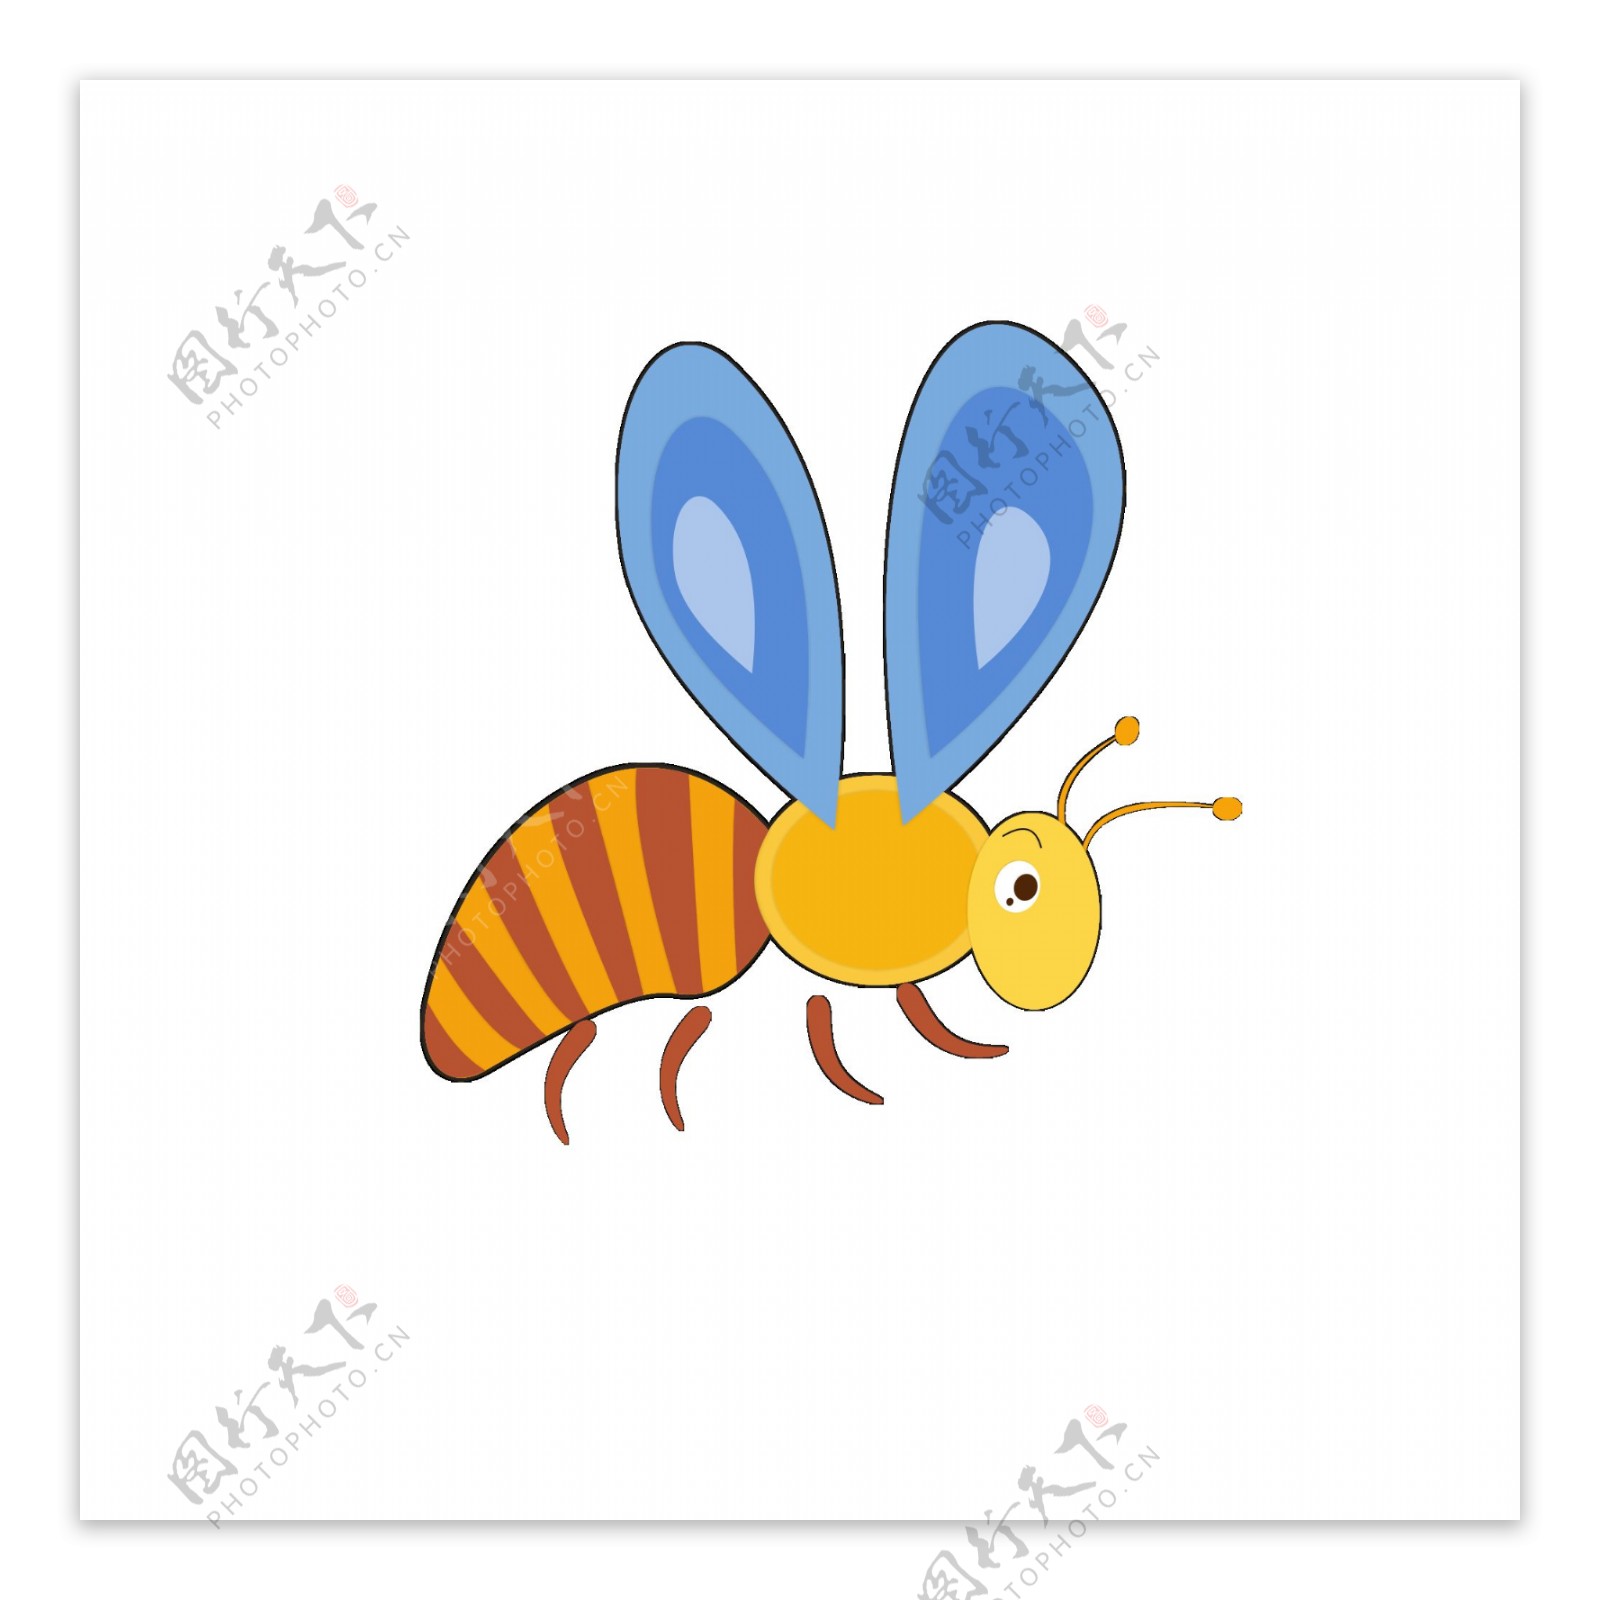 原创蜜蜂元素之卡通可爱昆虫纸片风